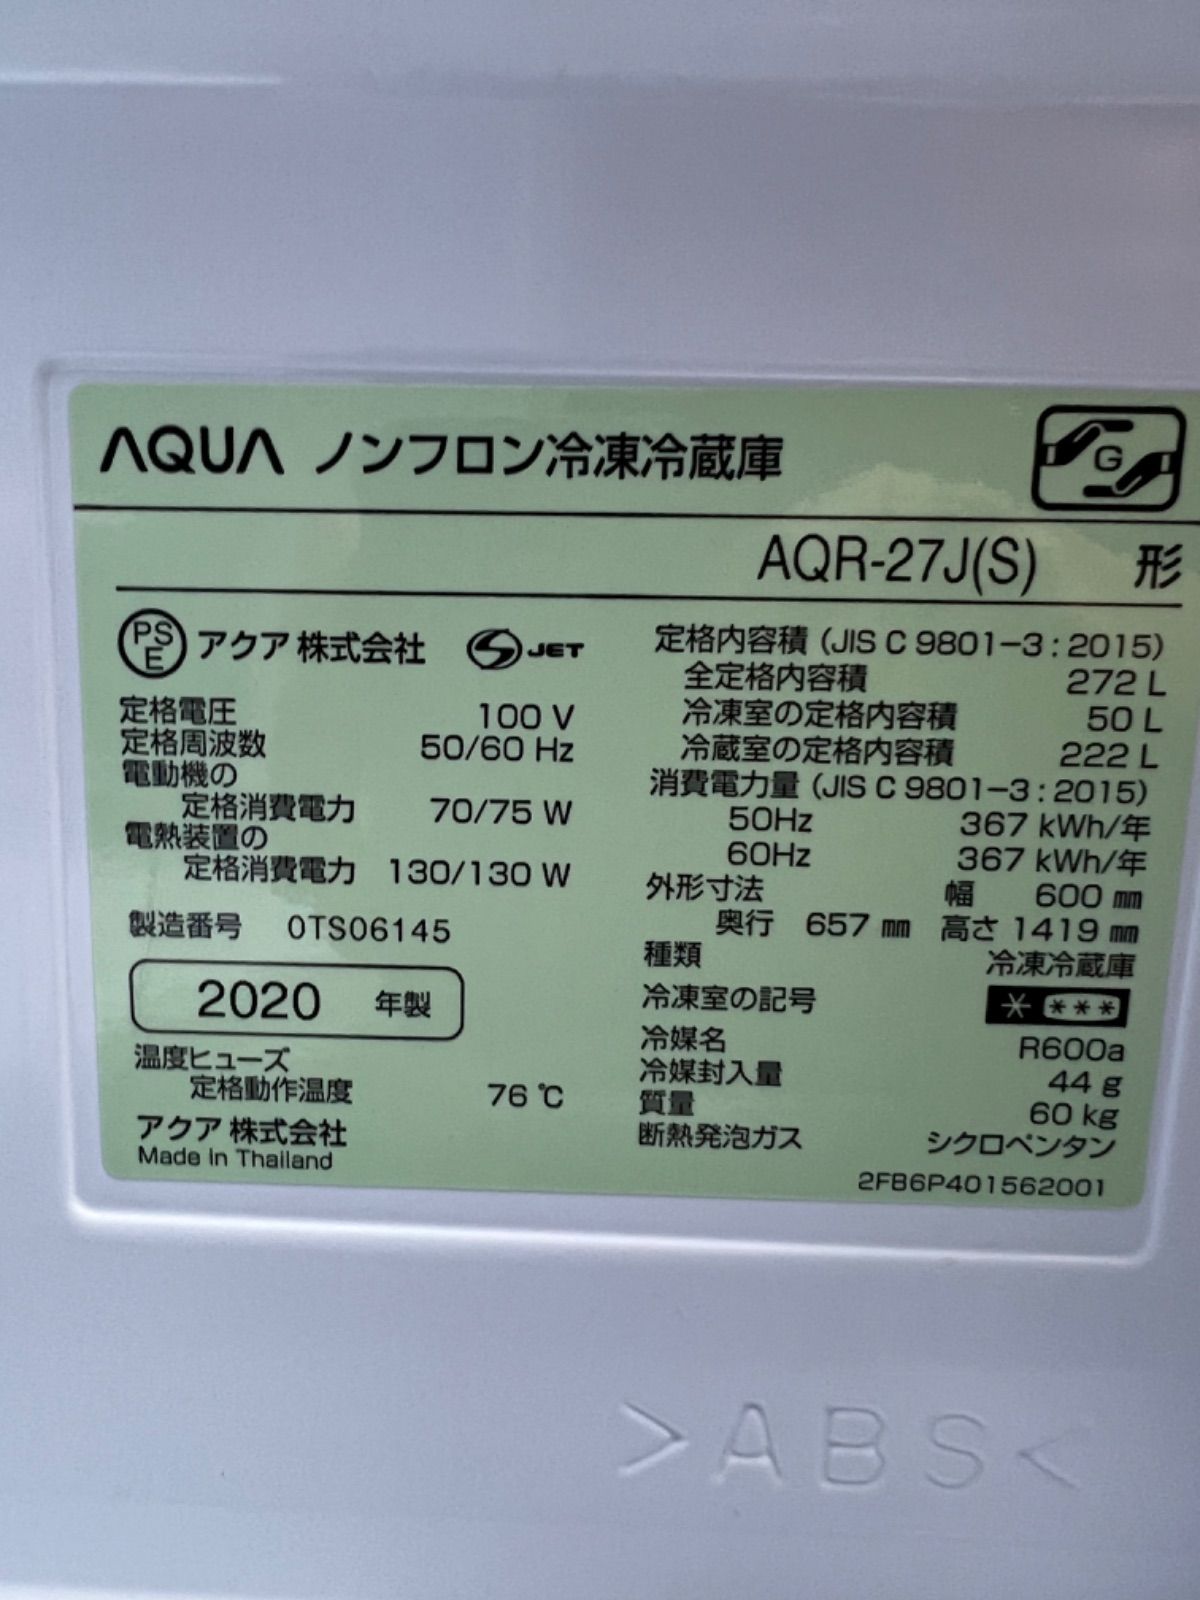 Aqua 3ドア冷蔵庫 270ℓ  2020年製 AQR-27J 280ℓ-9